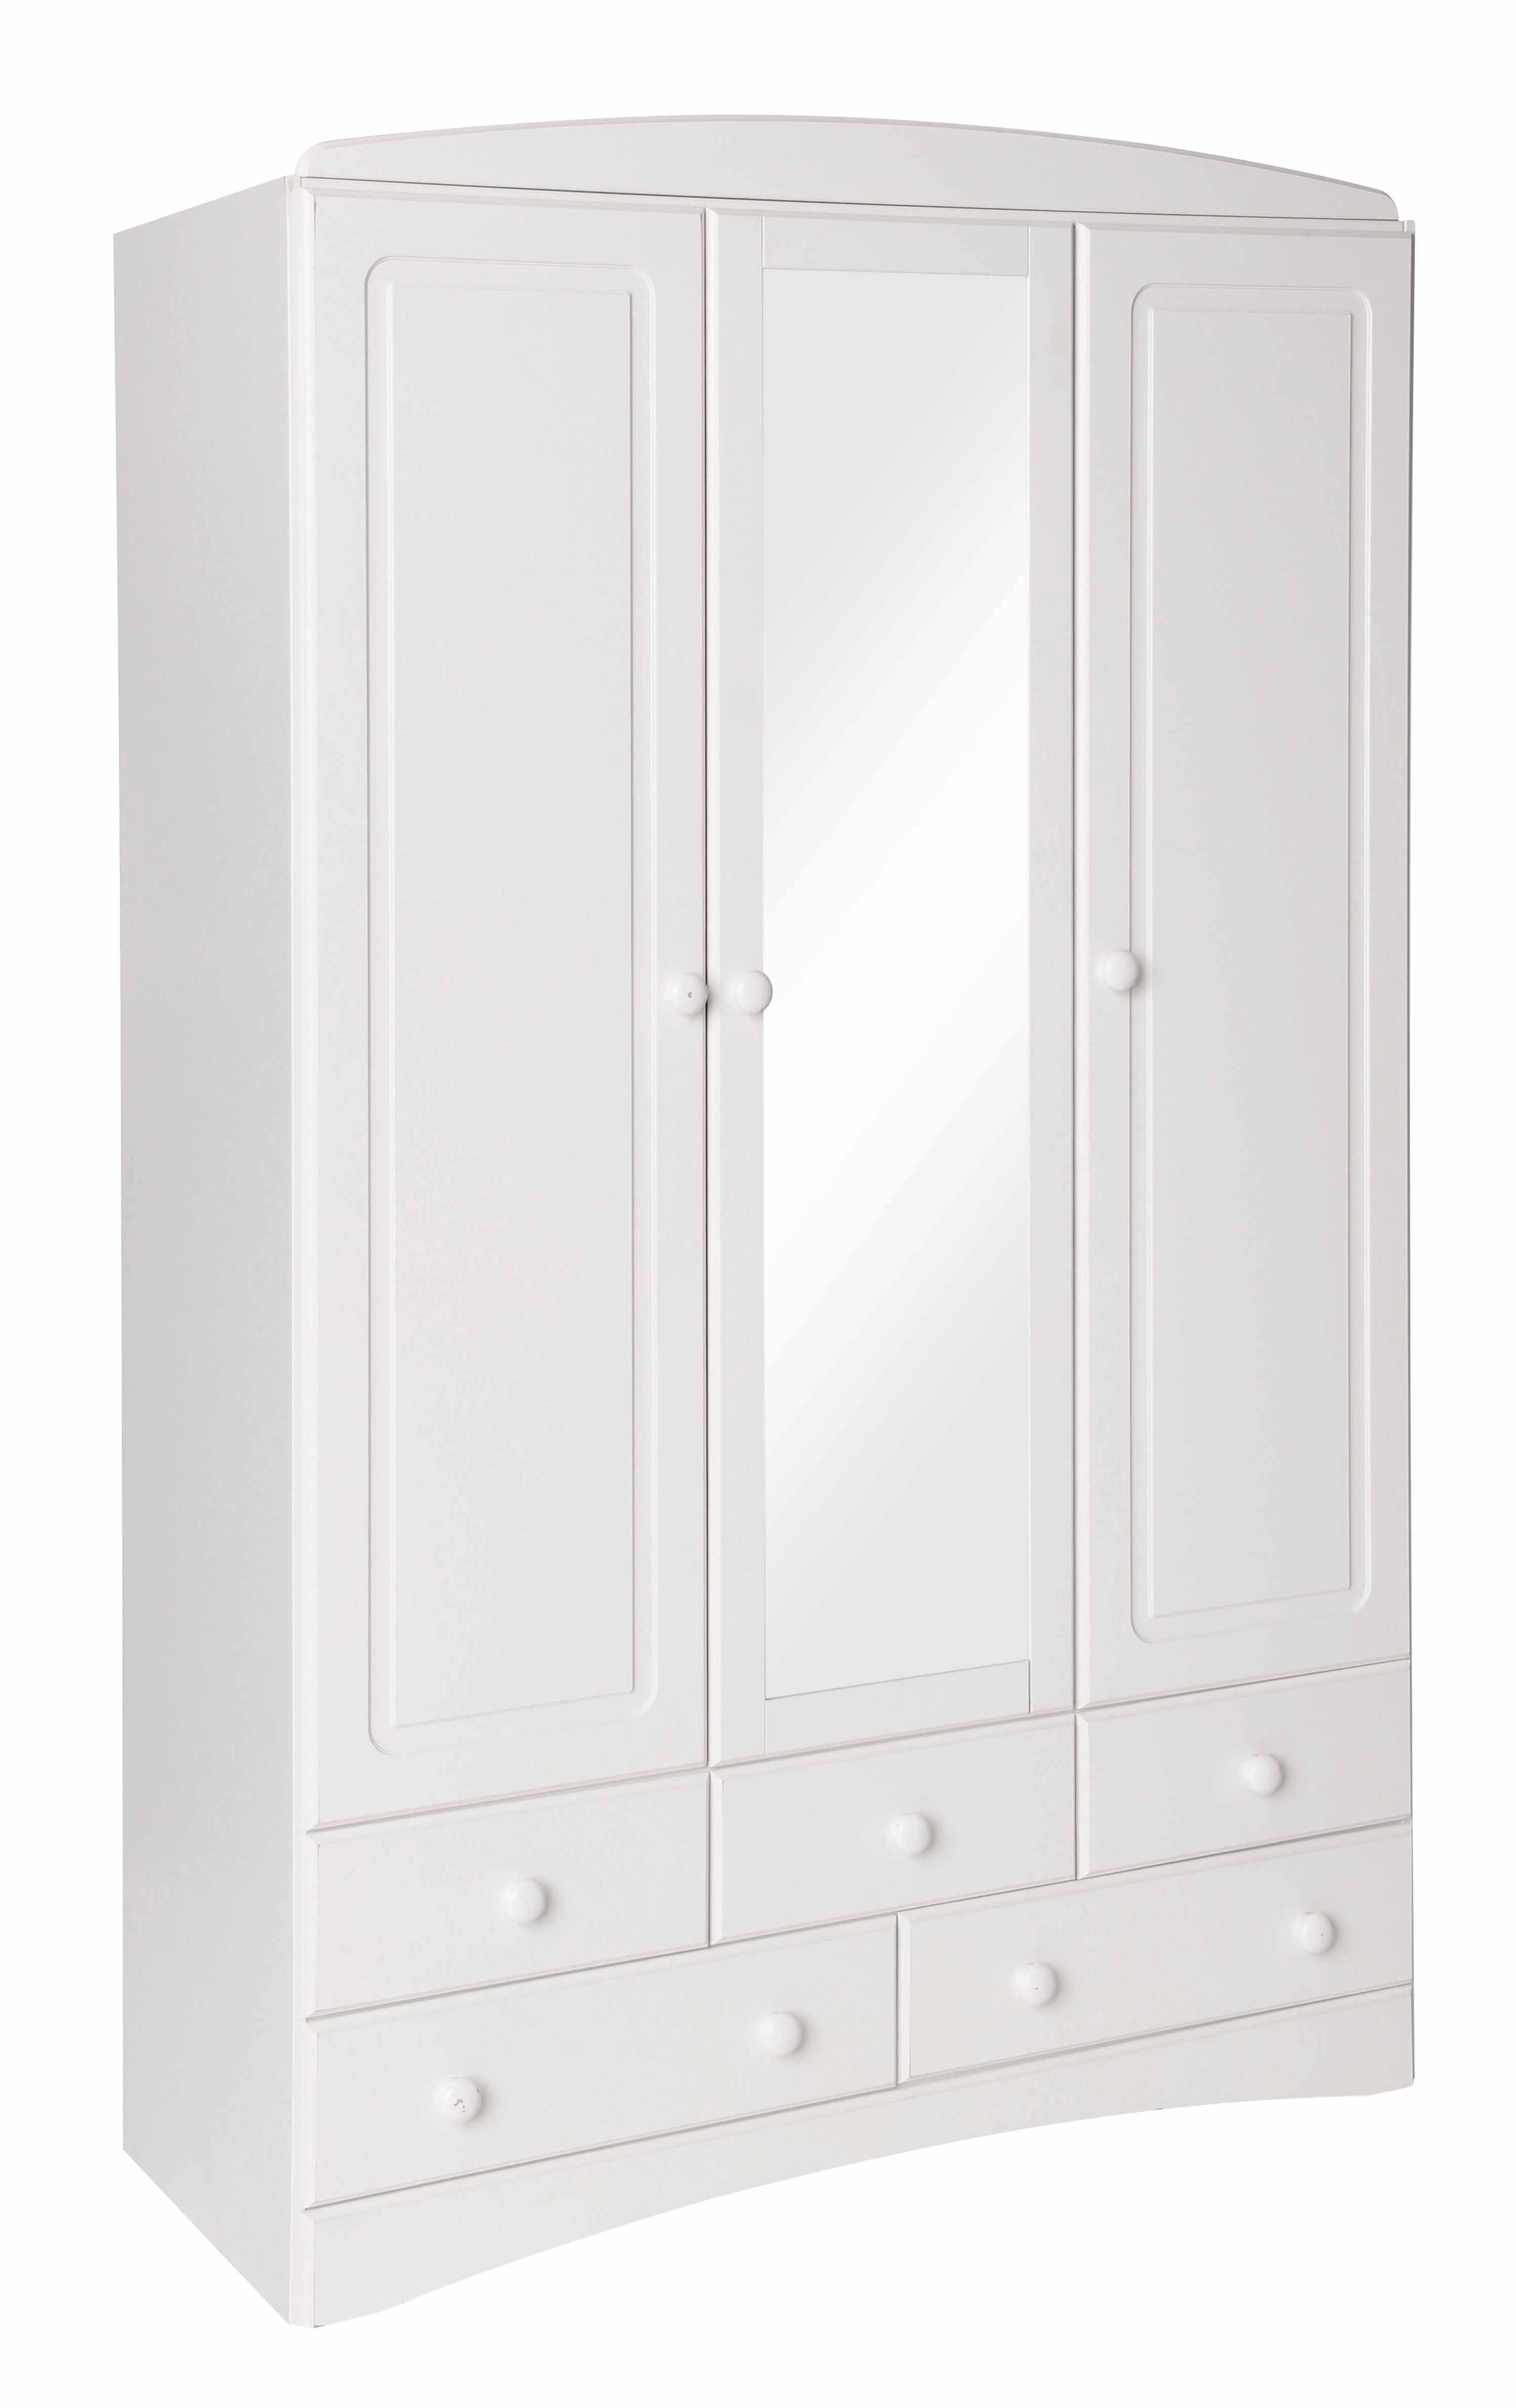 Scandi White 3 Door 5 Drawer Wardrobe With Mirror Inside 3 Door White Wardrobes With Drawers (View 1 of 15)